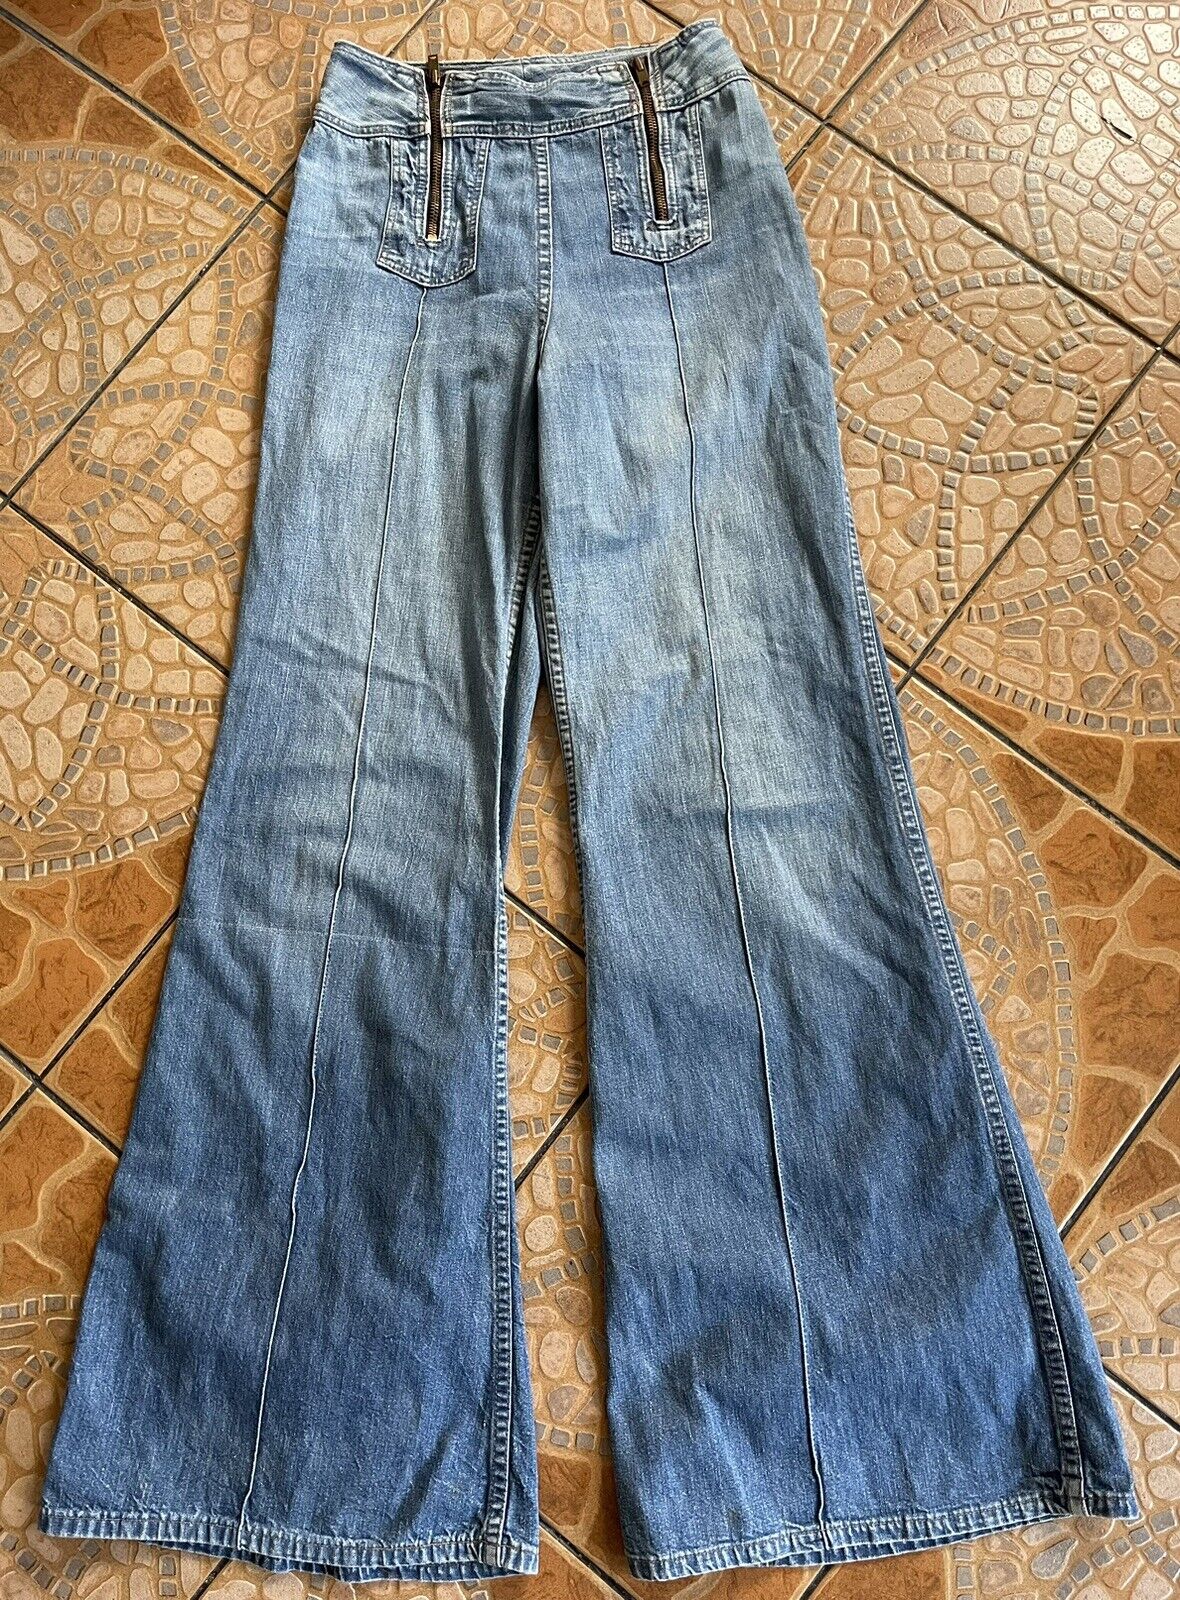 Vintage 1960s 70s Wrangler Bell Bottom Jeans Super Wide Leg Flares Size 11/12